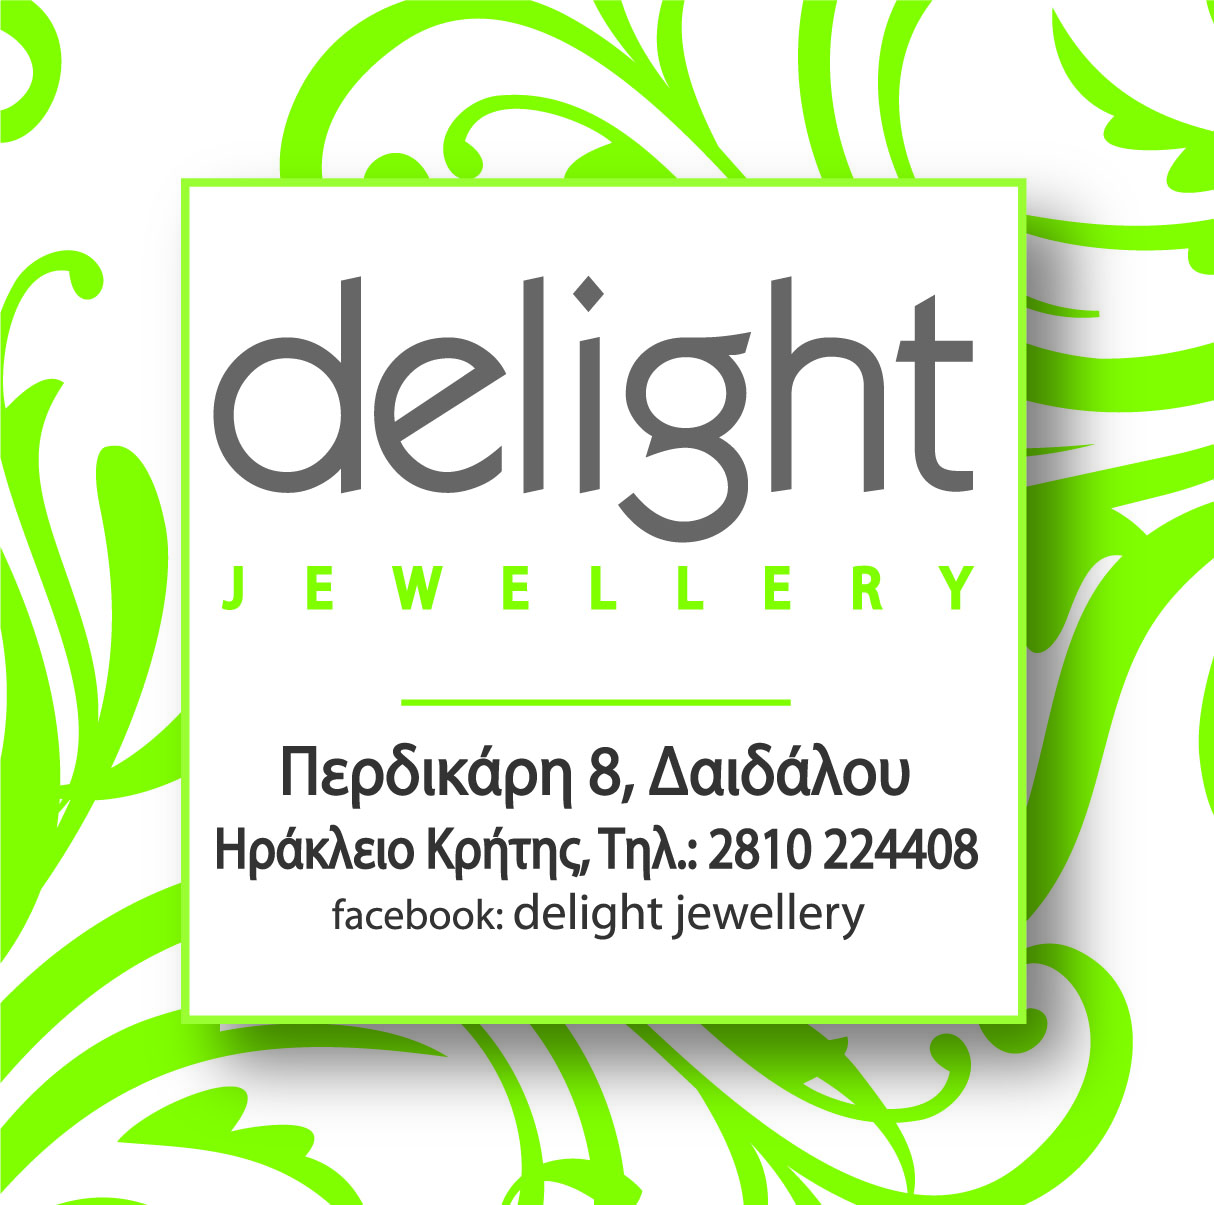 delight jewellery.jpg